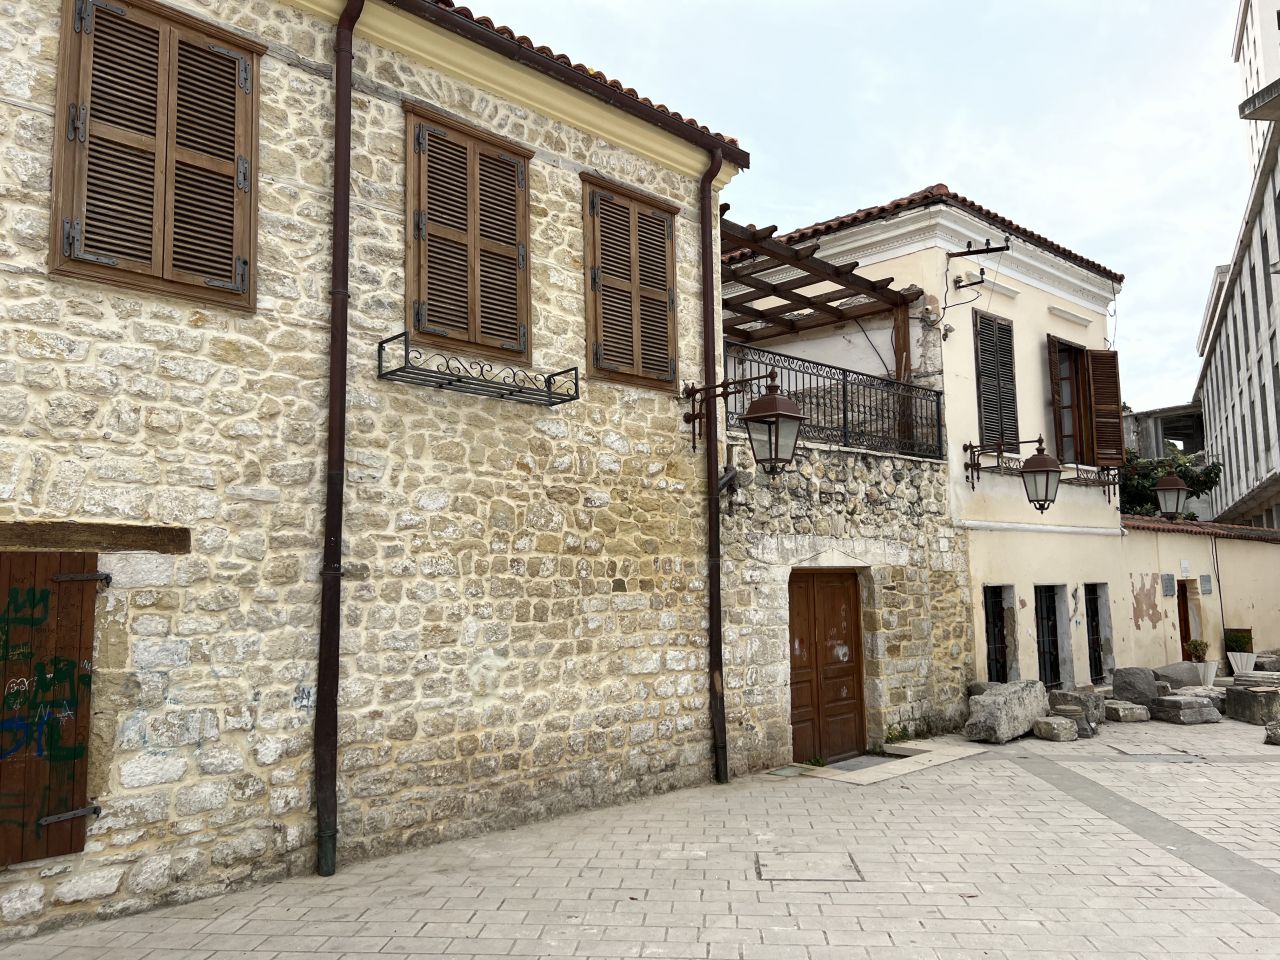 Zwei-Zimmer-Wohnung zum Verkauf in Vlore Albanien